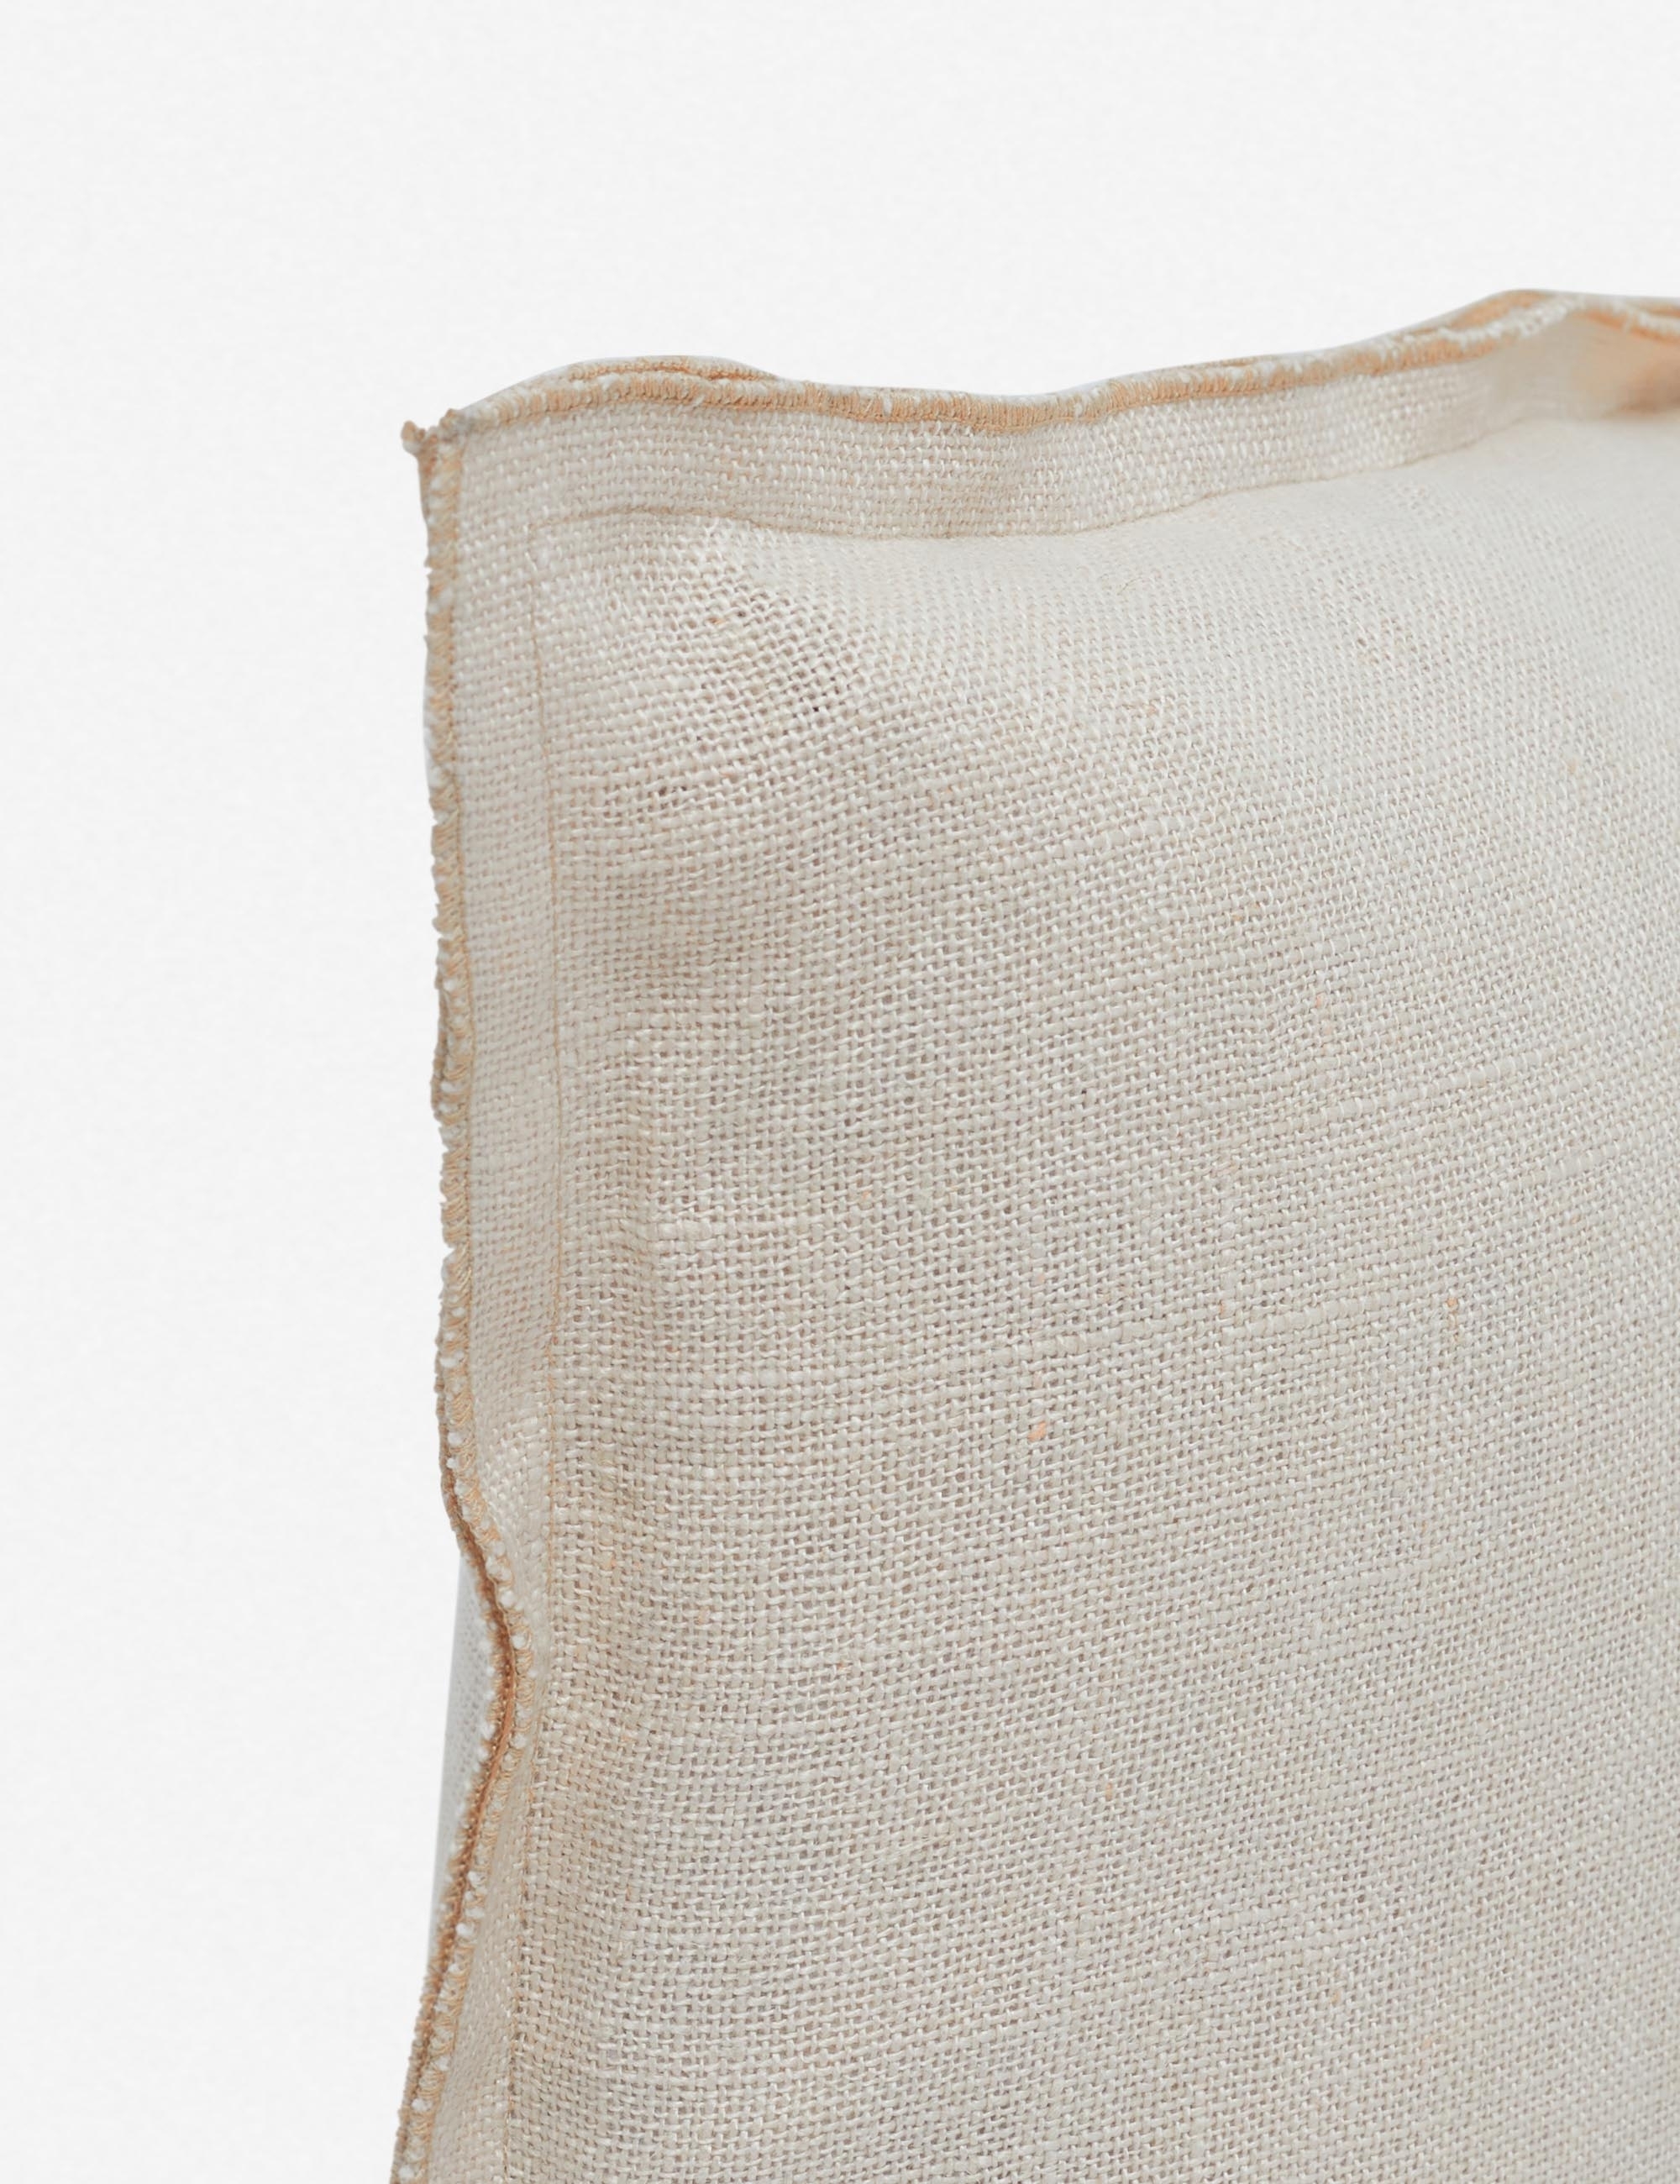 Arlo Linen Long Lumbar Pillow, Light Natural, 36" x 14" - Image 1